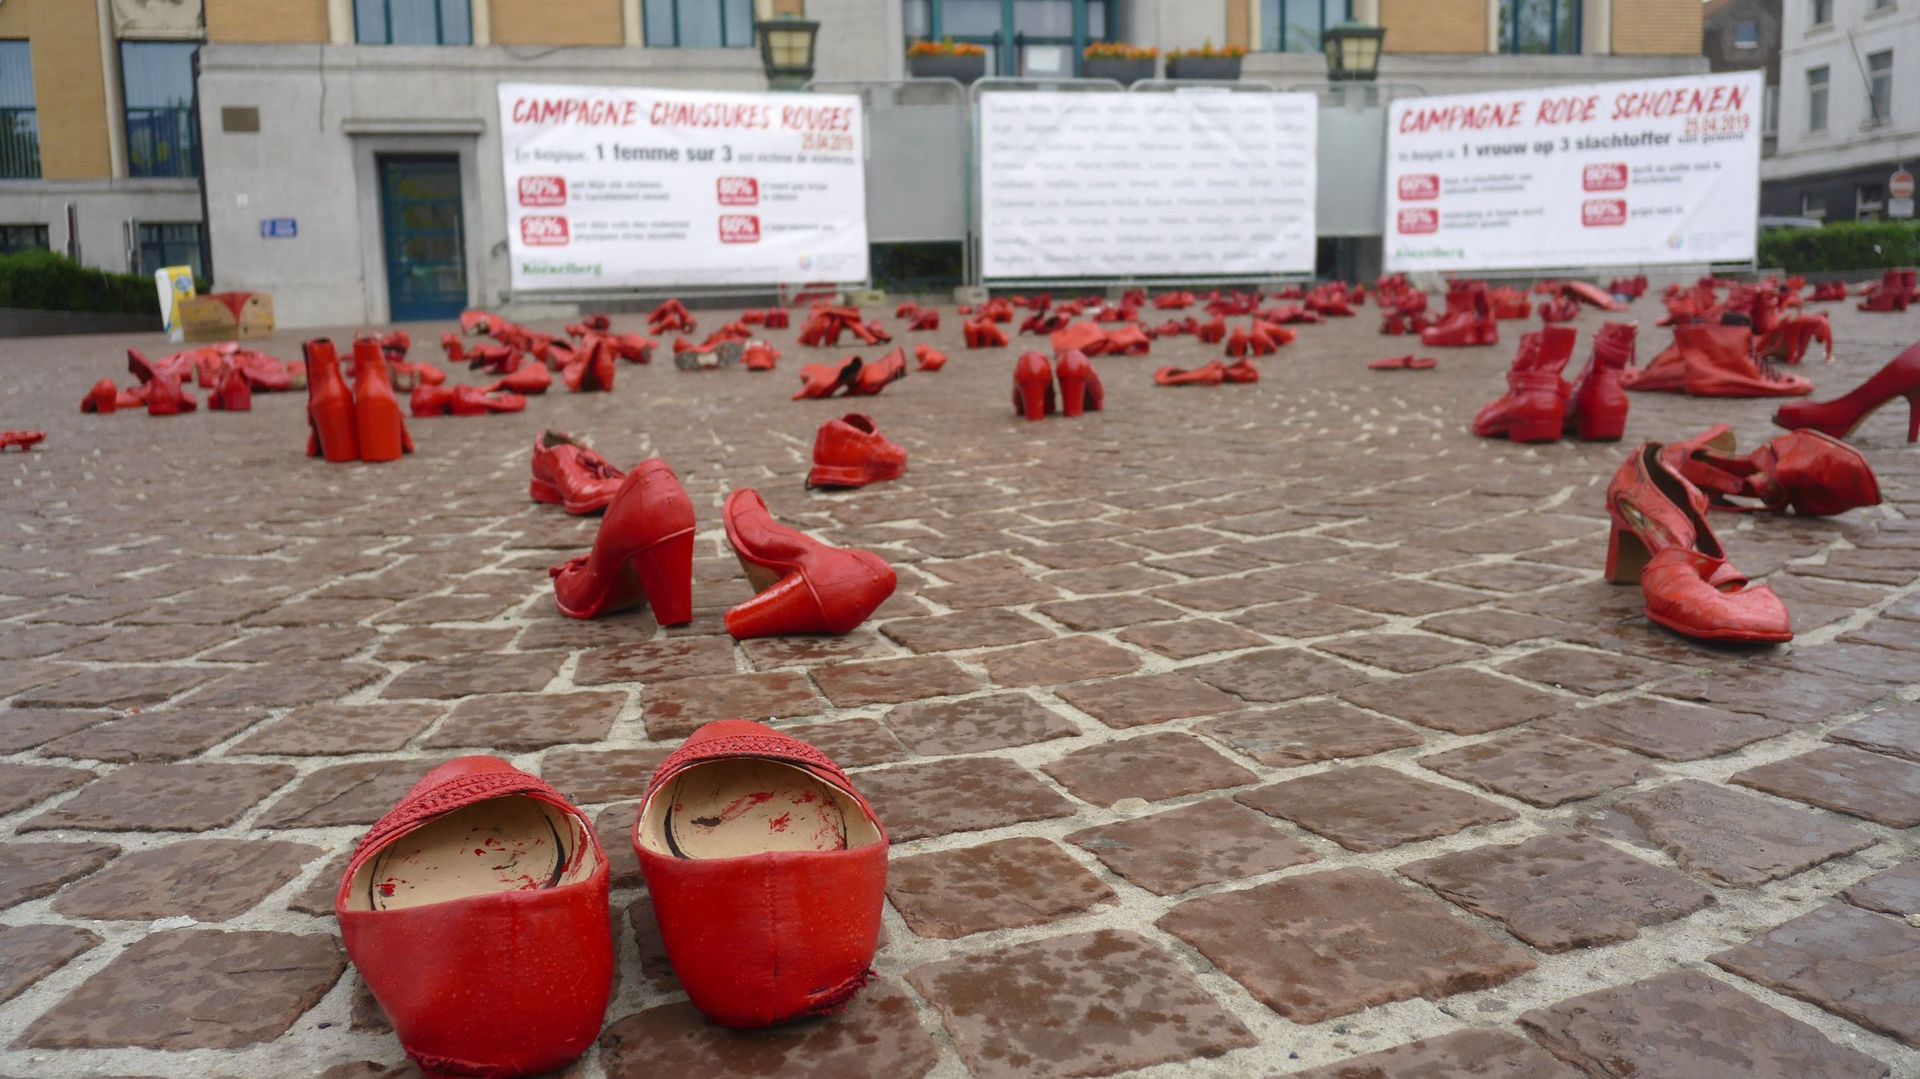 Jeudi 25 avril, des centaines de chaussures rouges ont été disposées sur la place communale de Koekelberg pour dénoncer les féminicides. 